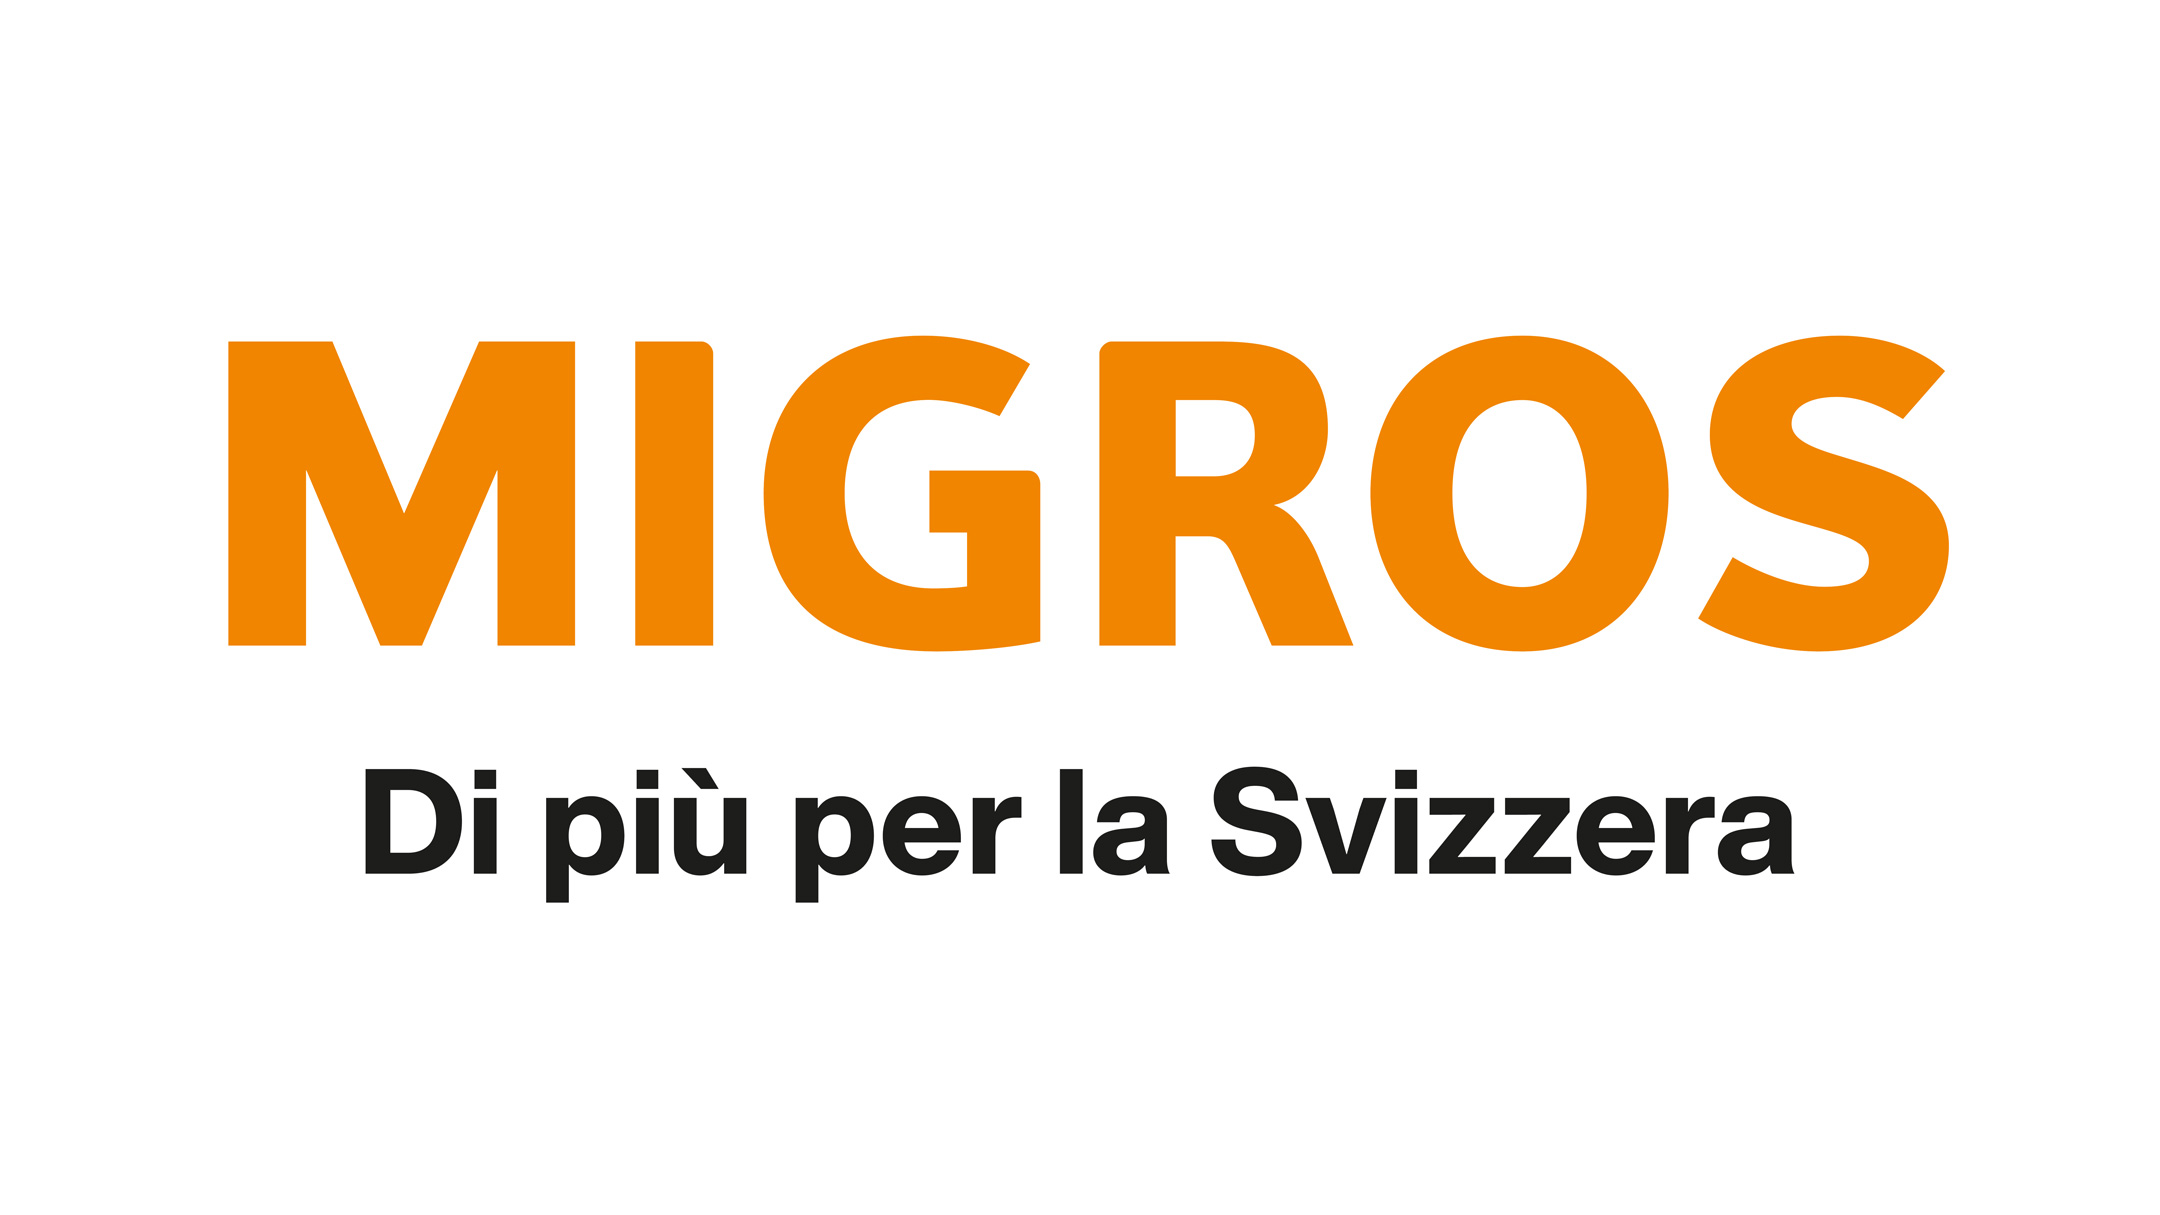 Migros Di più per la Svizzera